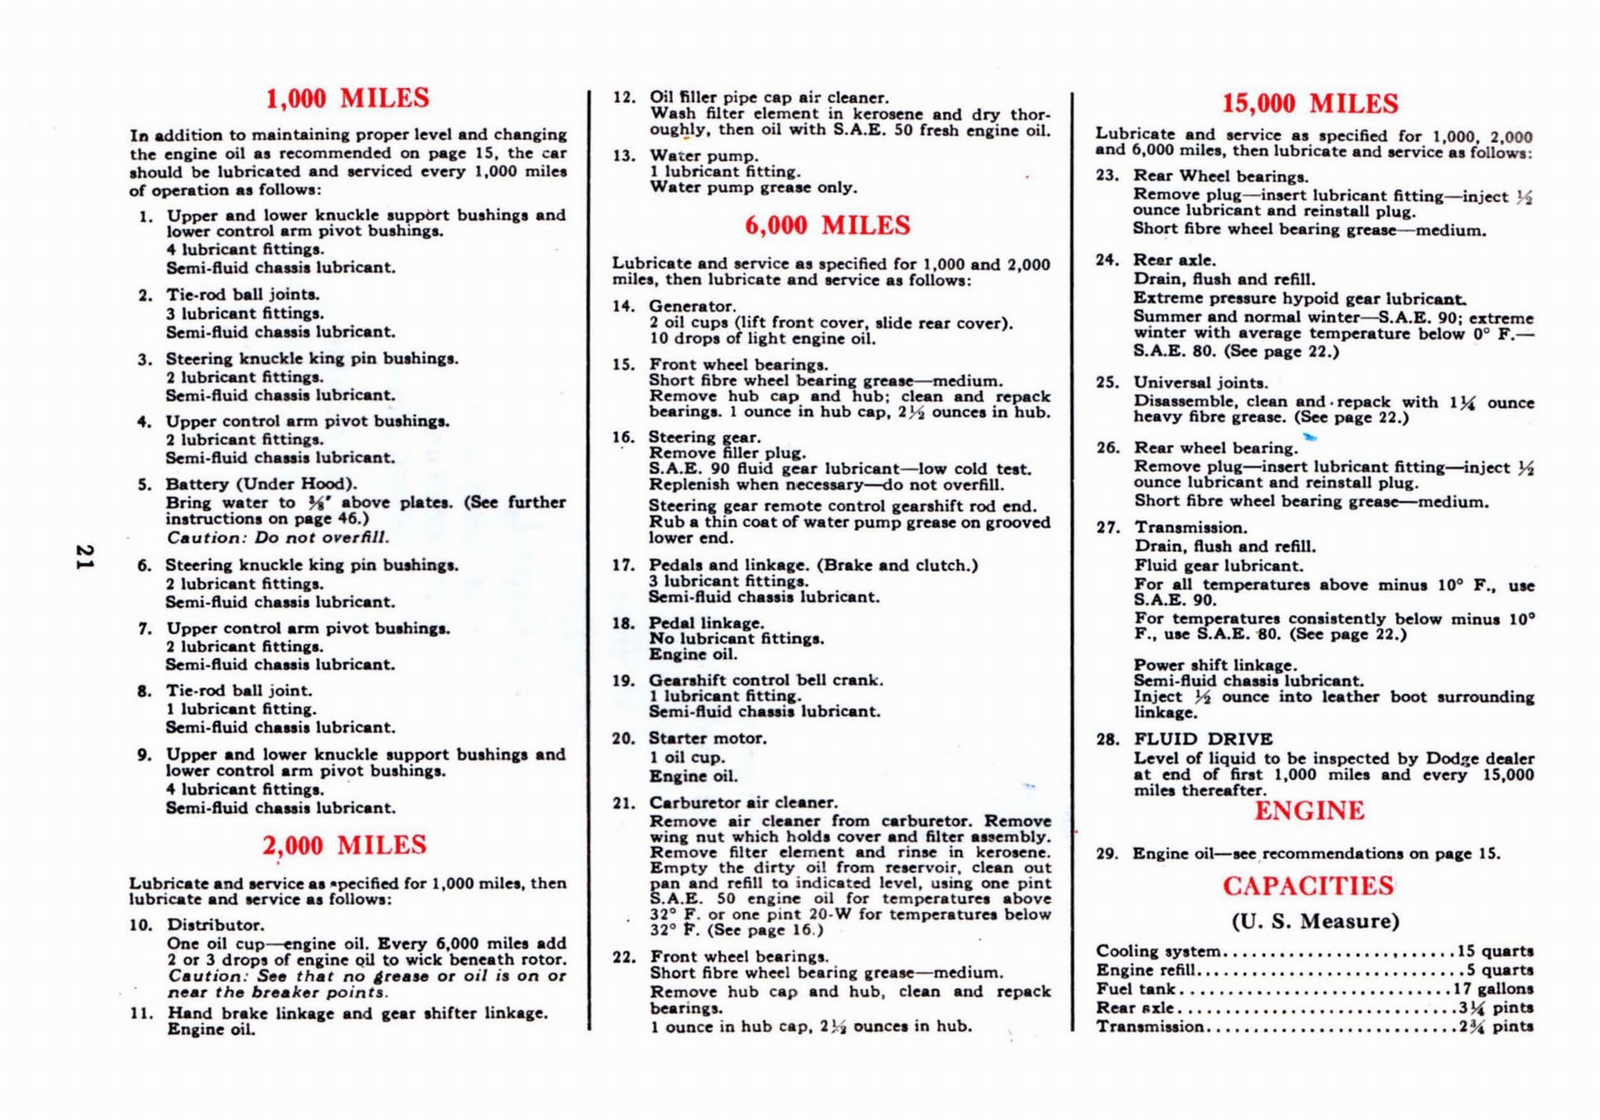 n_1941 Dodge Owners Manual-21.jpg